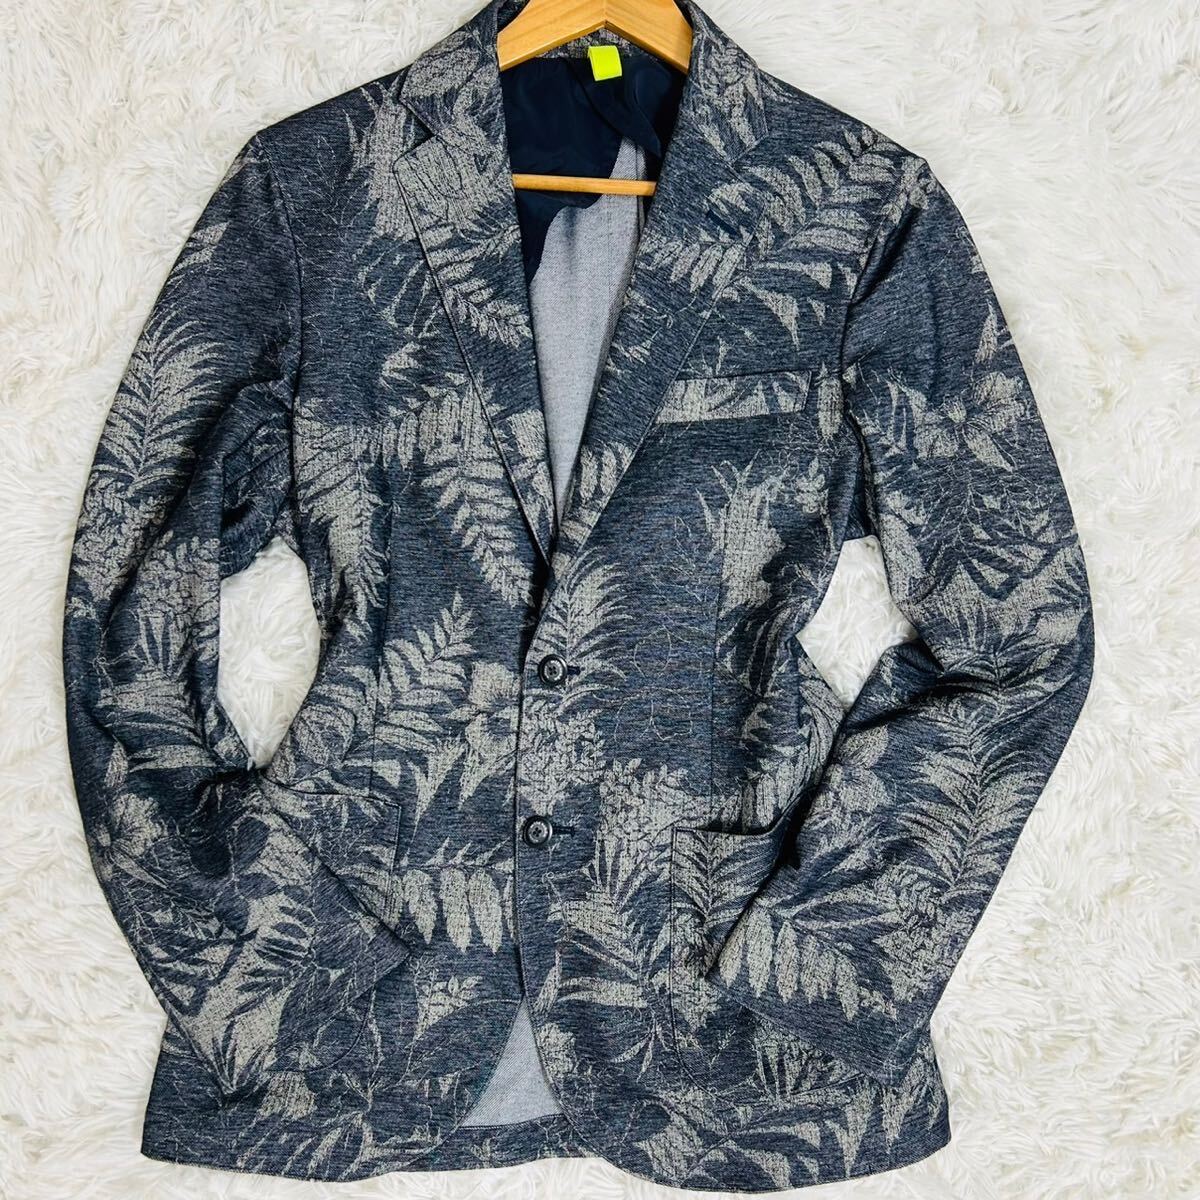  превосходный товар * Mila Schon [ давление шт. общий рисунок ] tailored jacket mila schon цветочный принт темно-синий серый весна лето необшитый на спине стрейч блейзер 48 L соответствует 2B